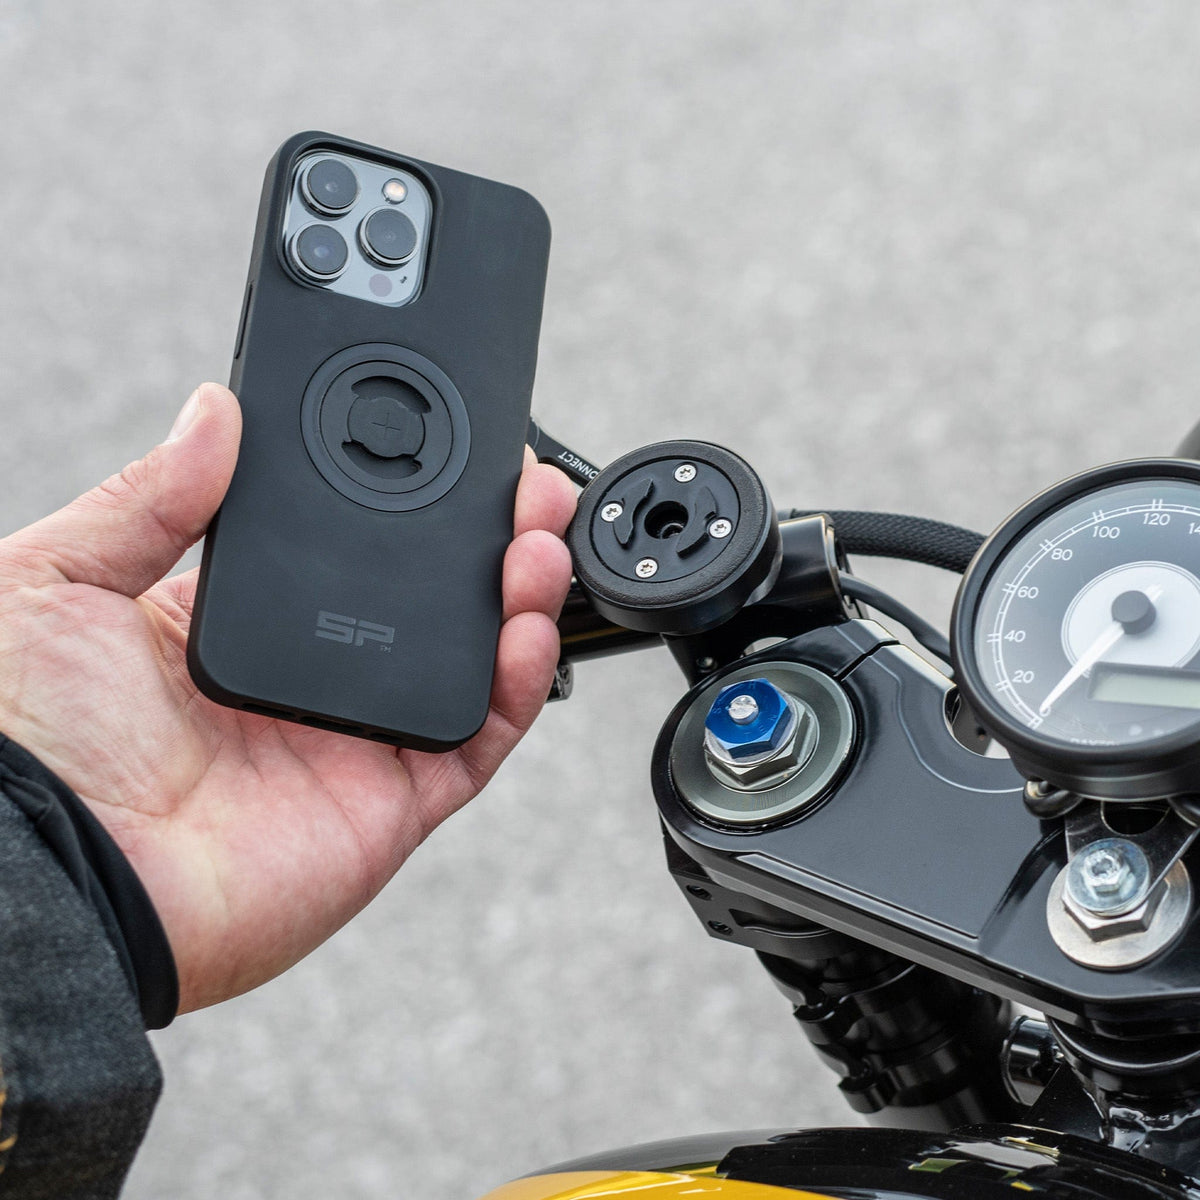 Telefon halter Vibrations dämpfer Motorrad Handy halter